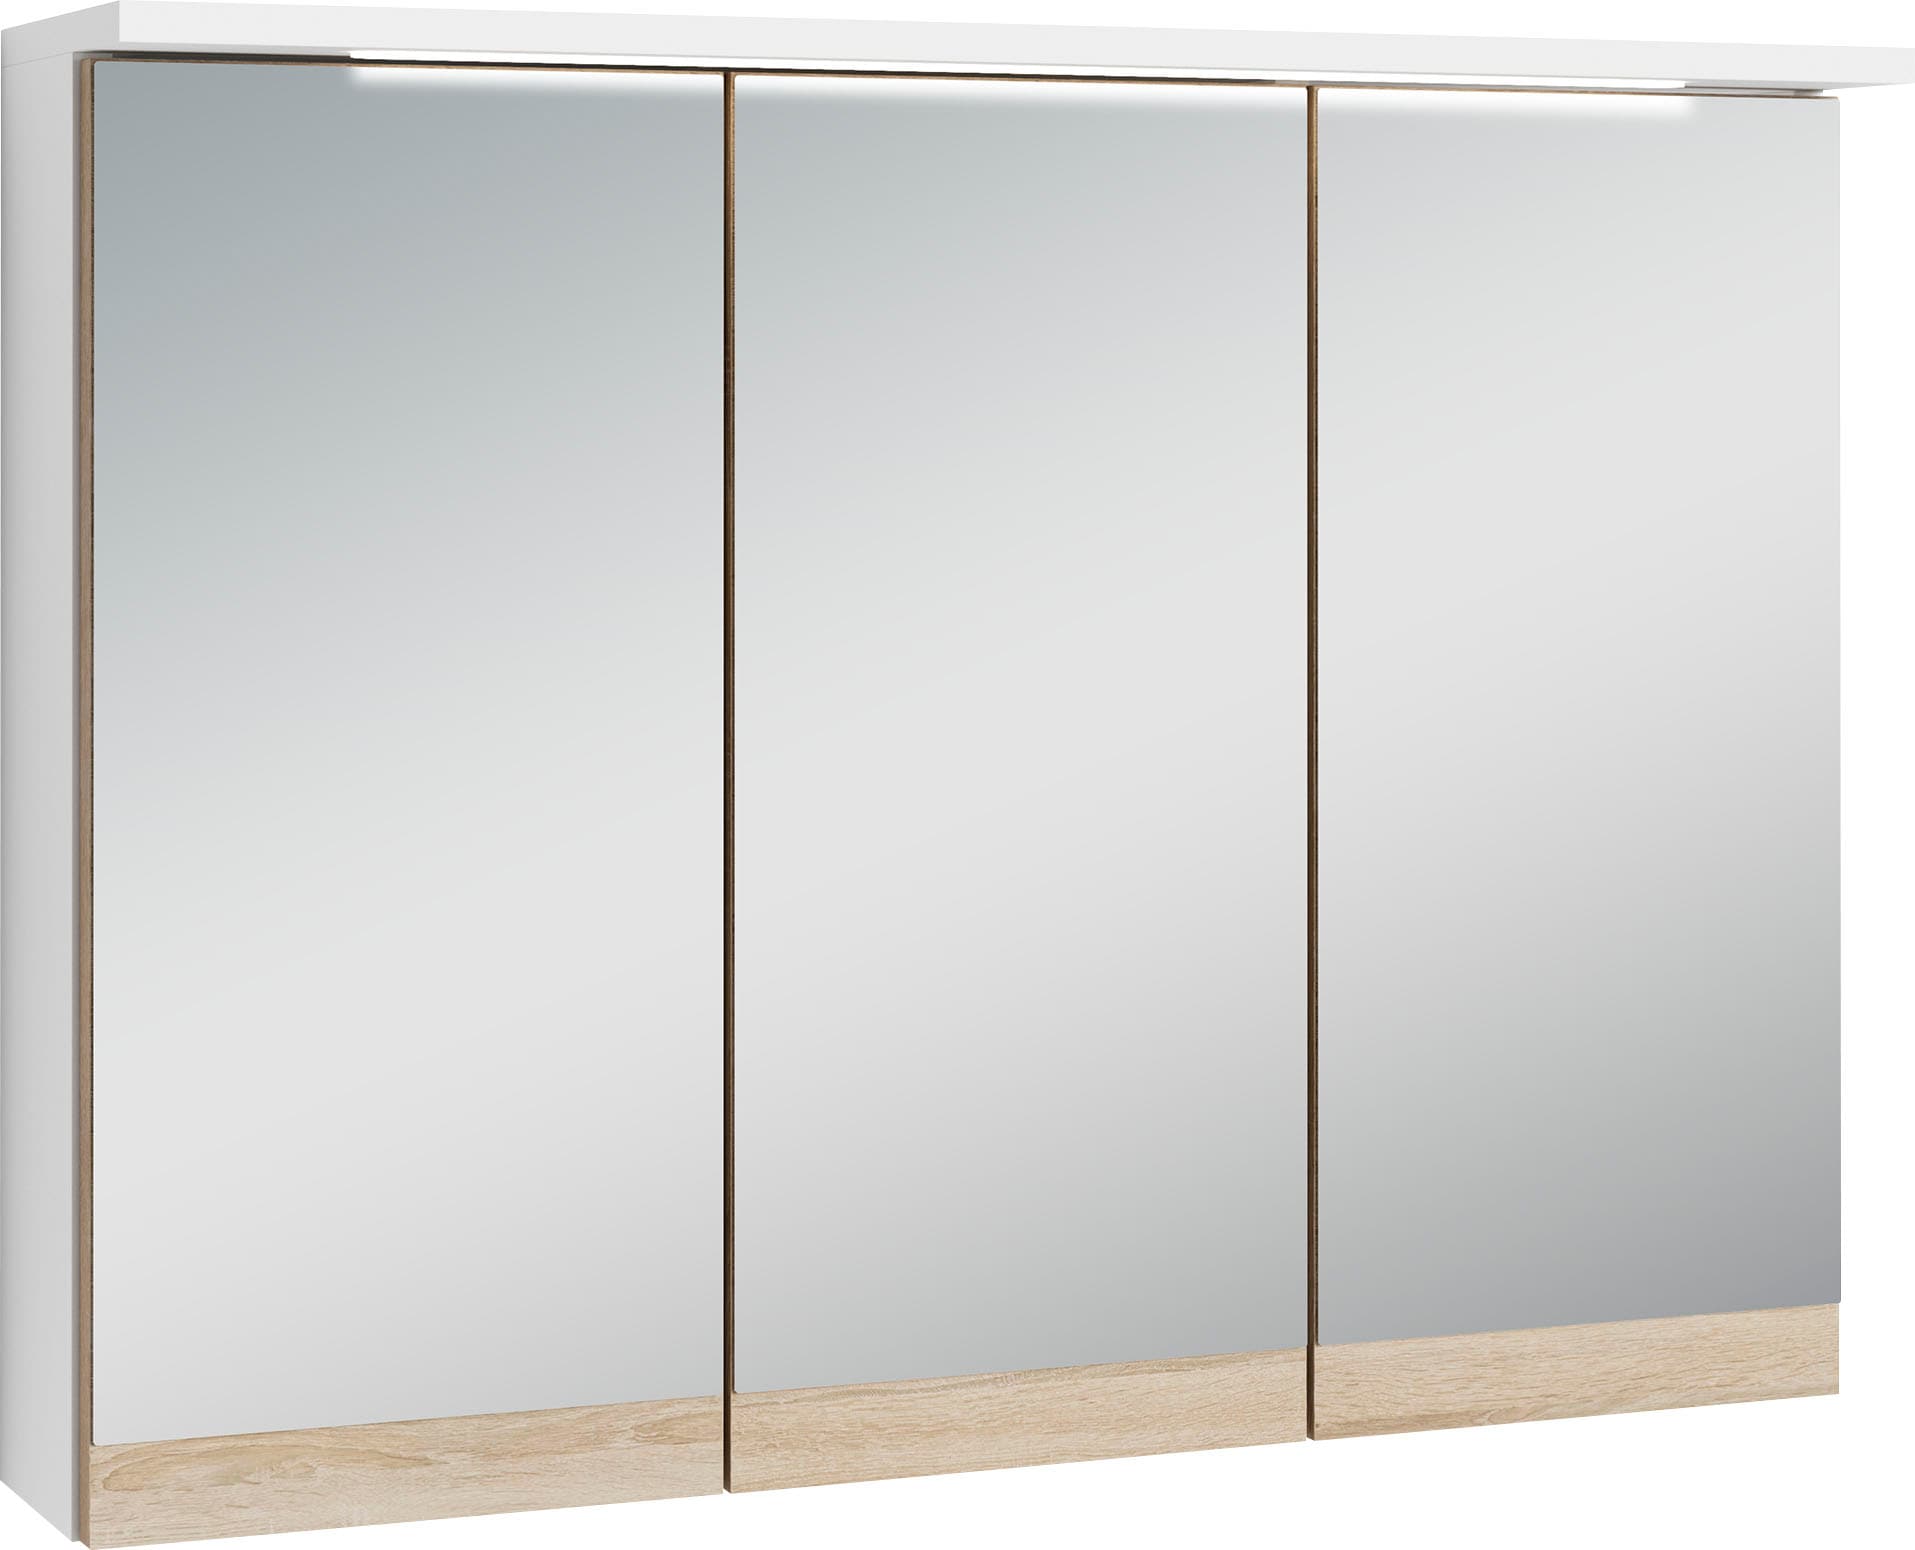 byLIVING Spiegelschrank »Marino«, Breite 80 cm, mit soft close Türen, inklusive LED Beleuchtung